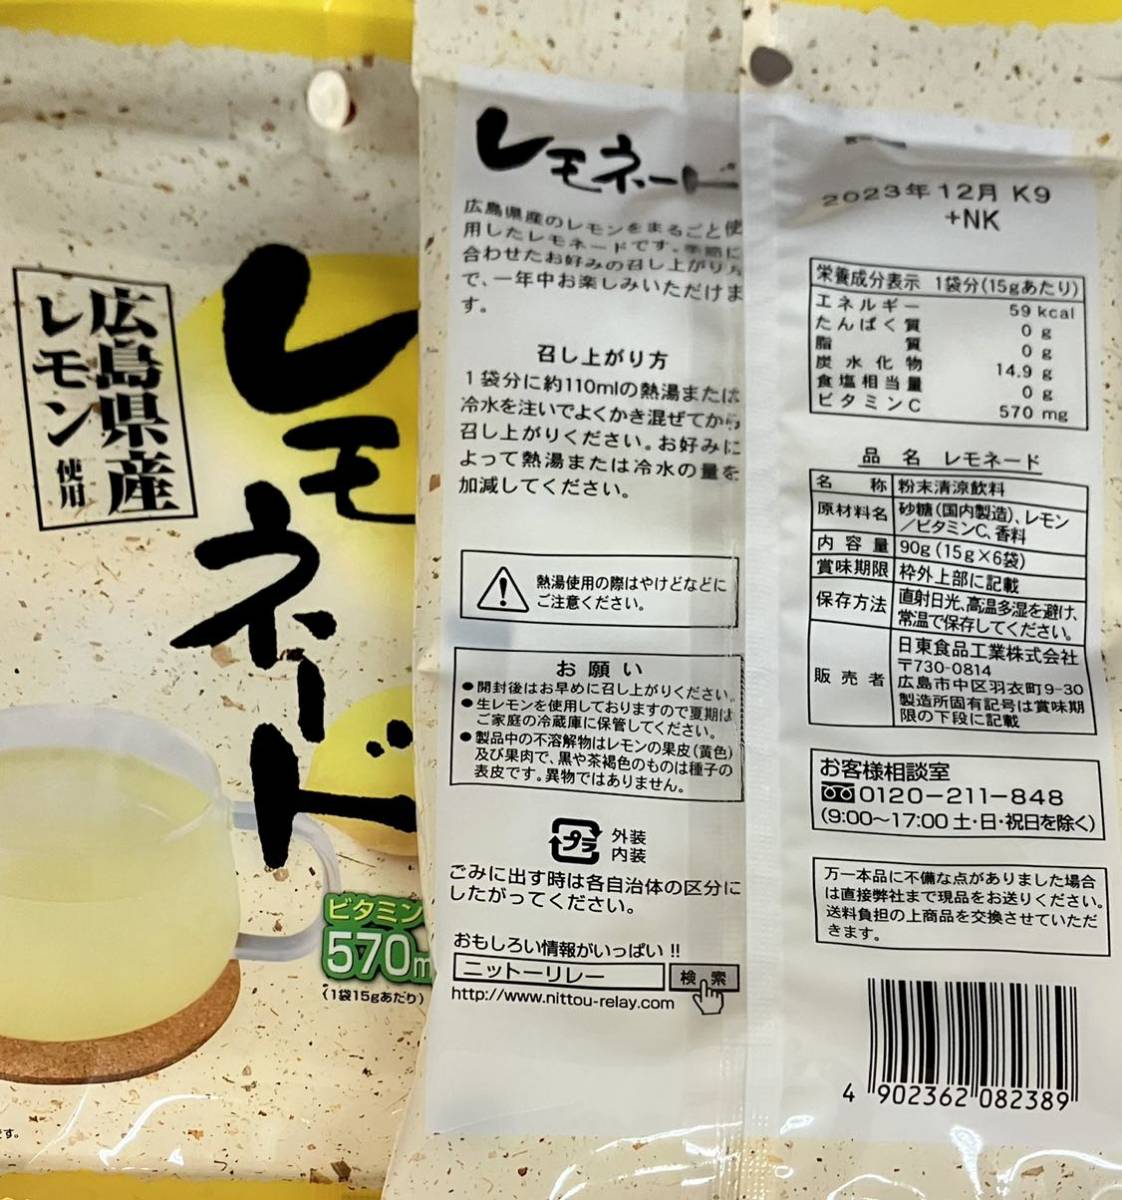 レモネード 18杯分 広島県産レモン使用 1杯あたりビタミンC570mg 粉末タイプ ホットレモン レモン飲料の画像2